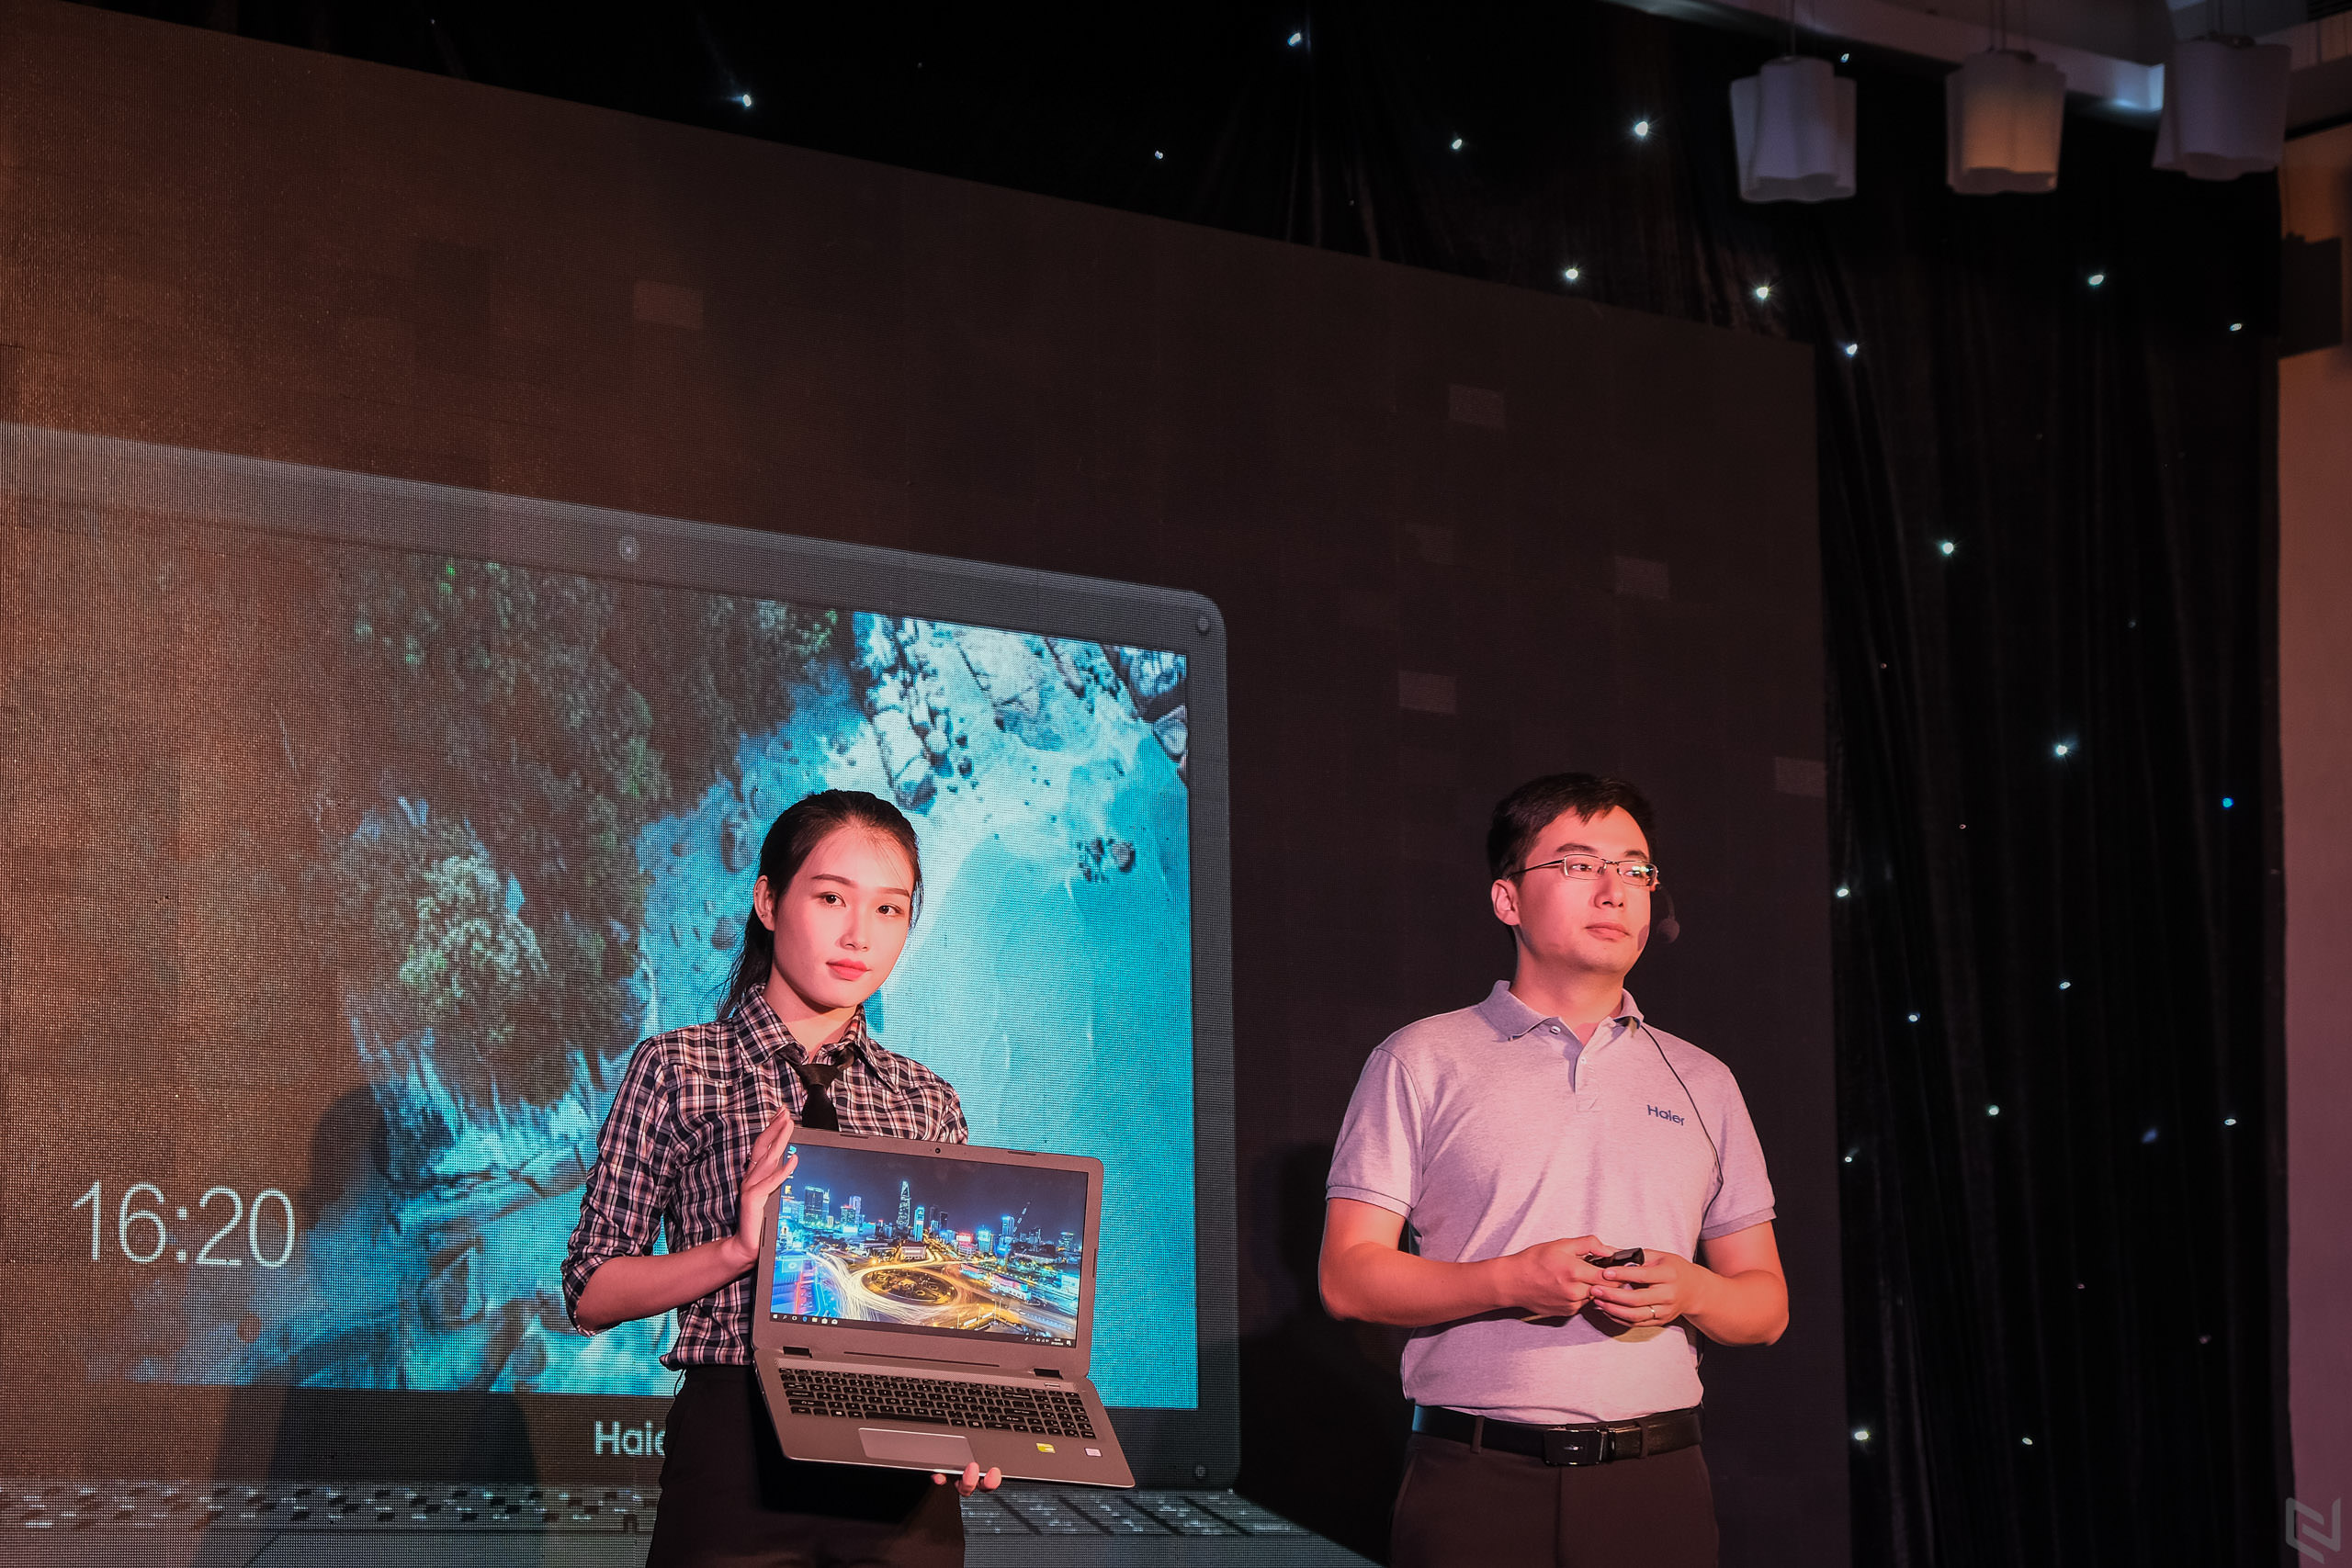 Thương hiệu laptop Haier ra mắt tại Việt Nam – laptop giá rẻ cho học sinh, sinh viên - giá từ 5.490.000đ